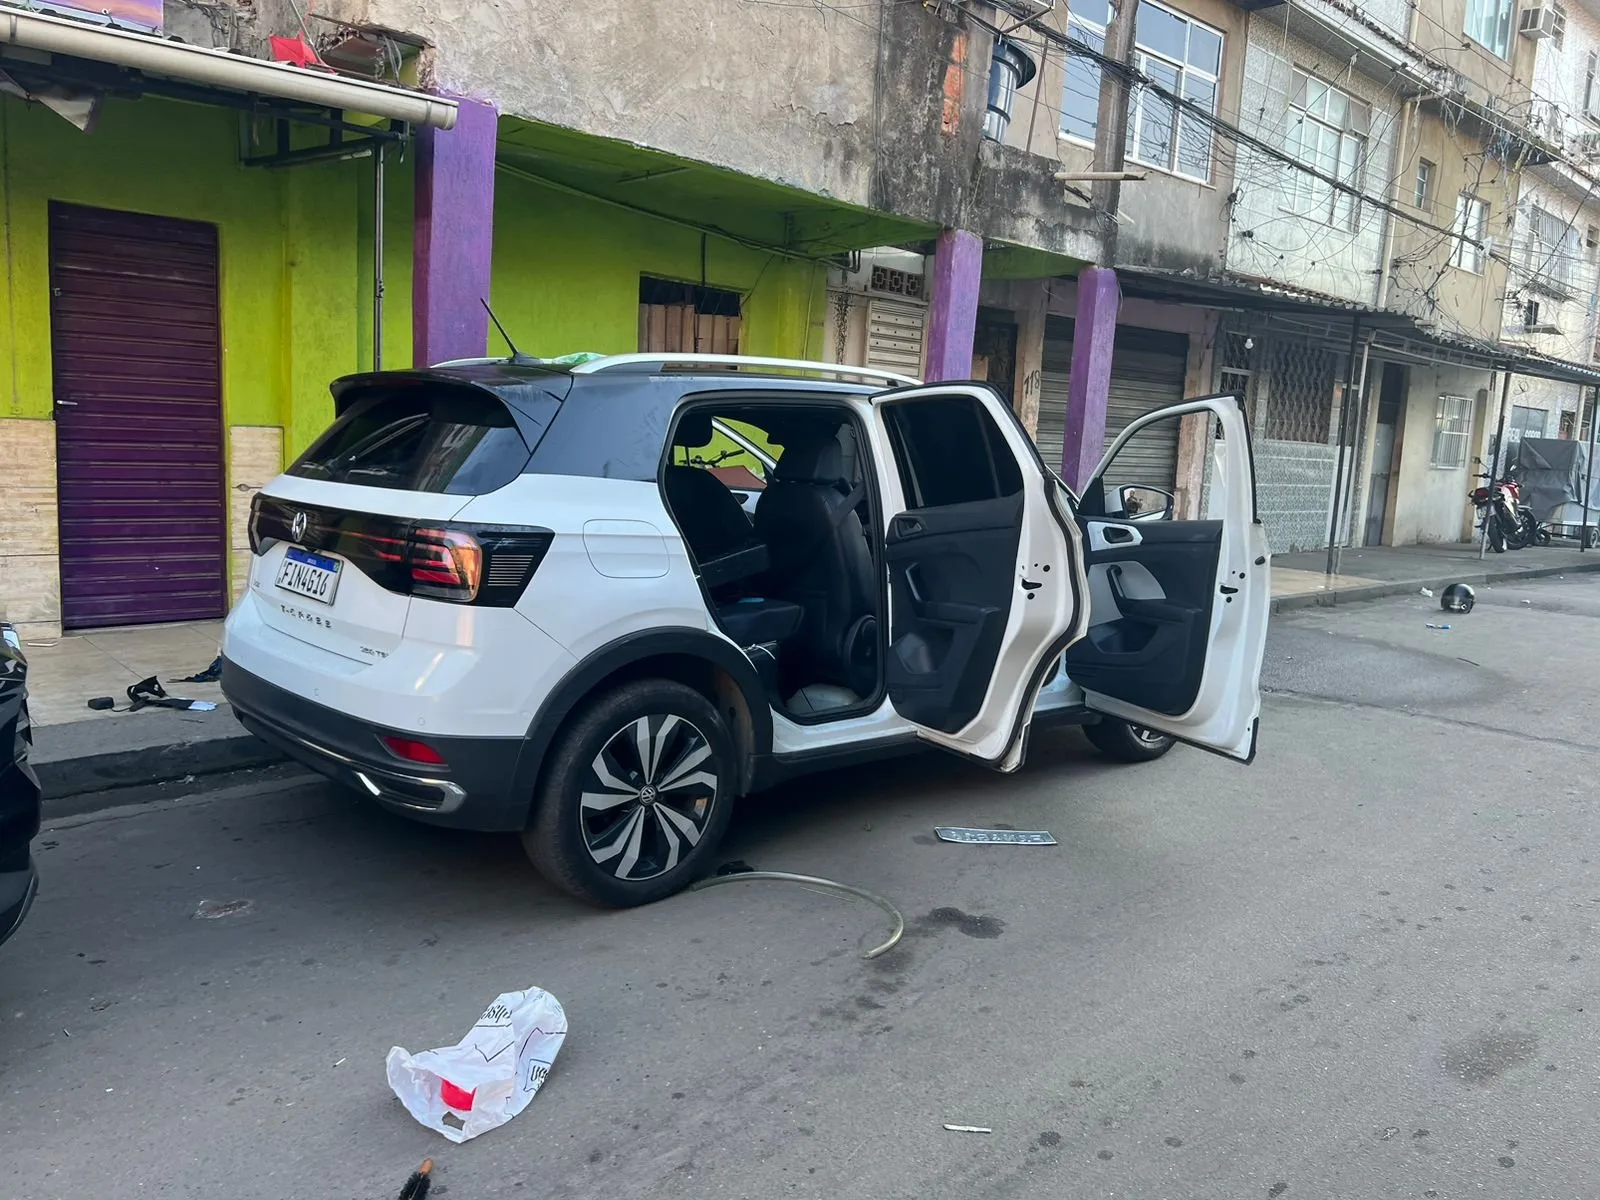 Veículos roubados foram recuperados por policiais do BOPE no interior do Complexo da Maré, na Zona Norte do cidade do Rio de Janeiro.